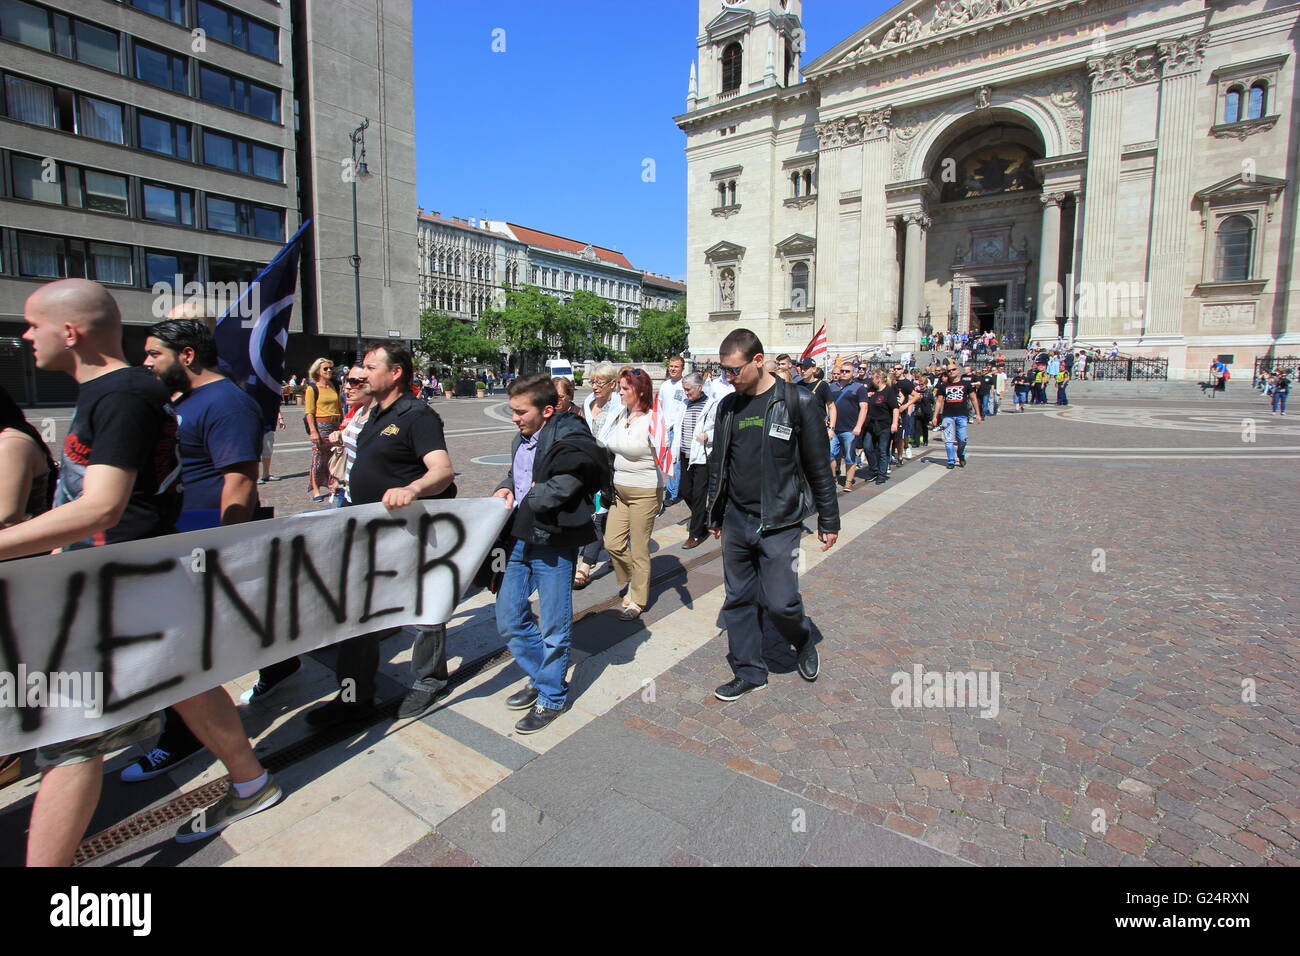 Eine rechtsextreme Bewegung, protestieren gegen Muslime und Europa, Budapest, Ungarn Stockfoto